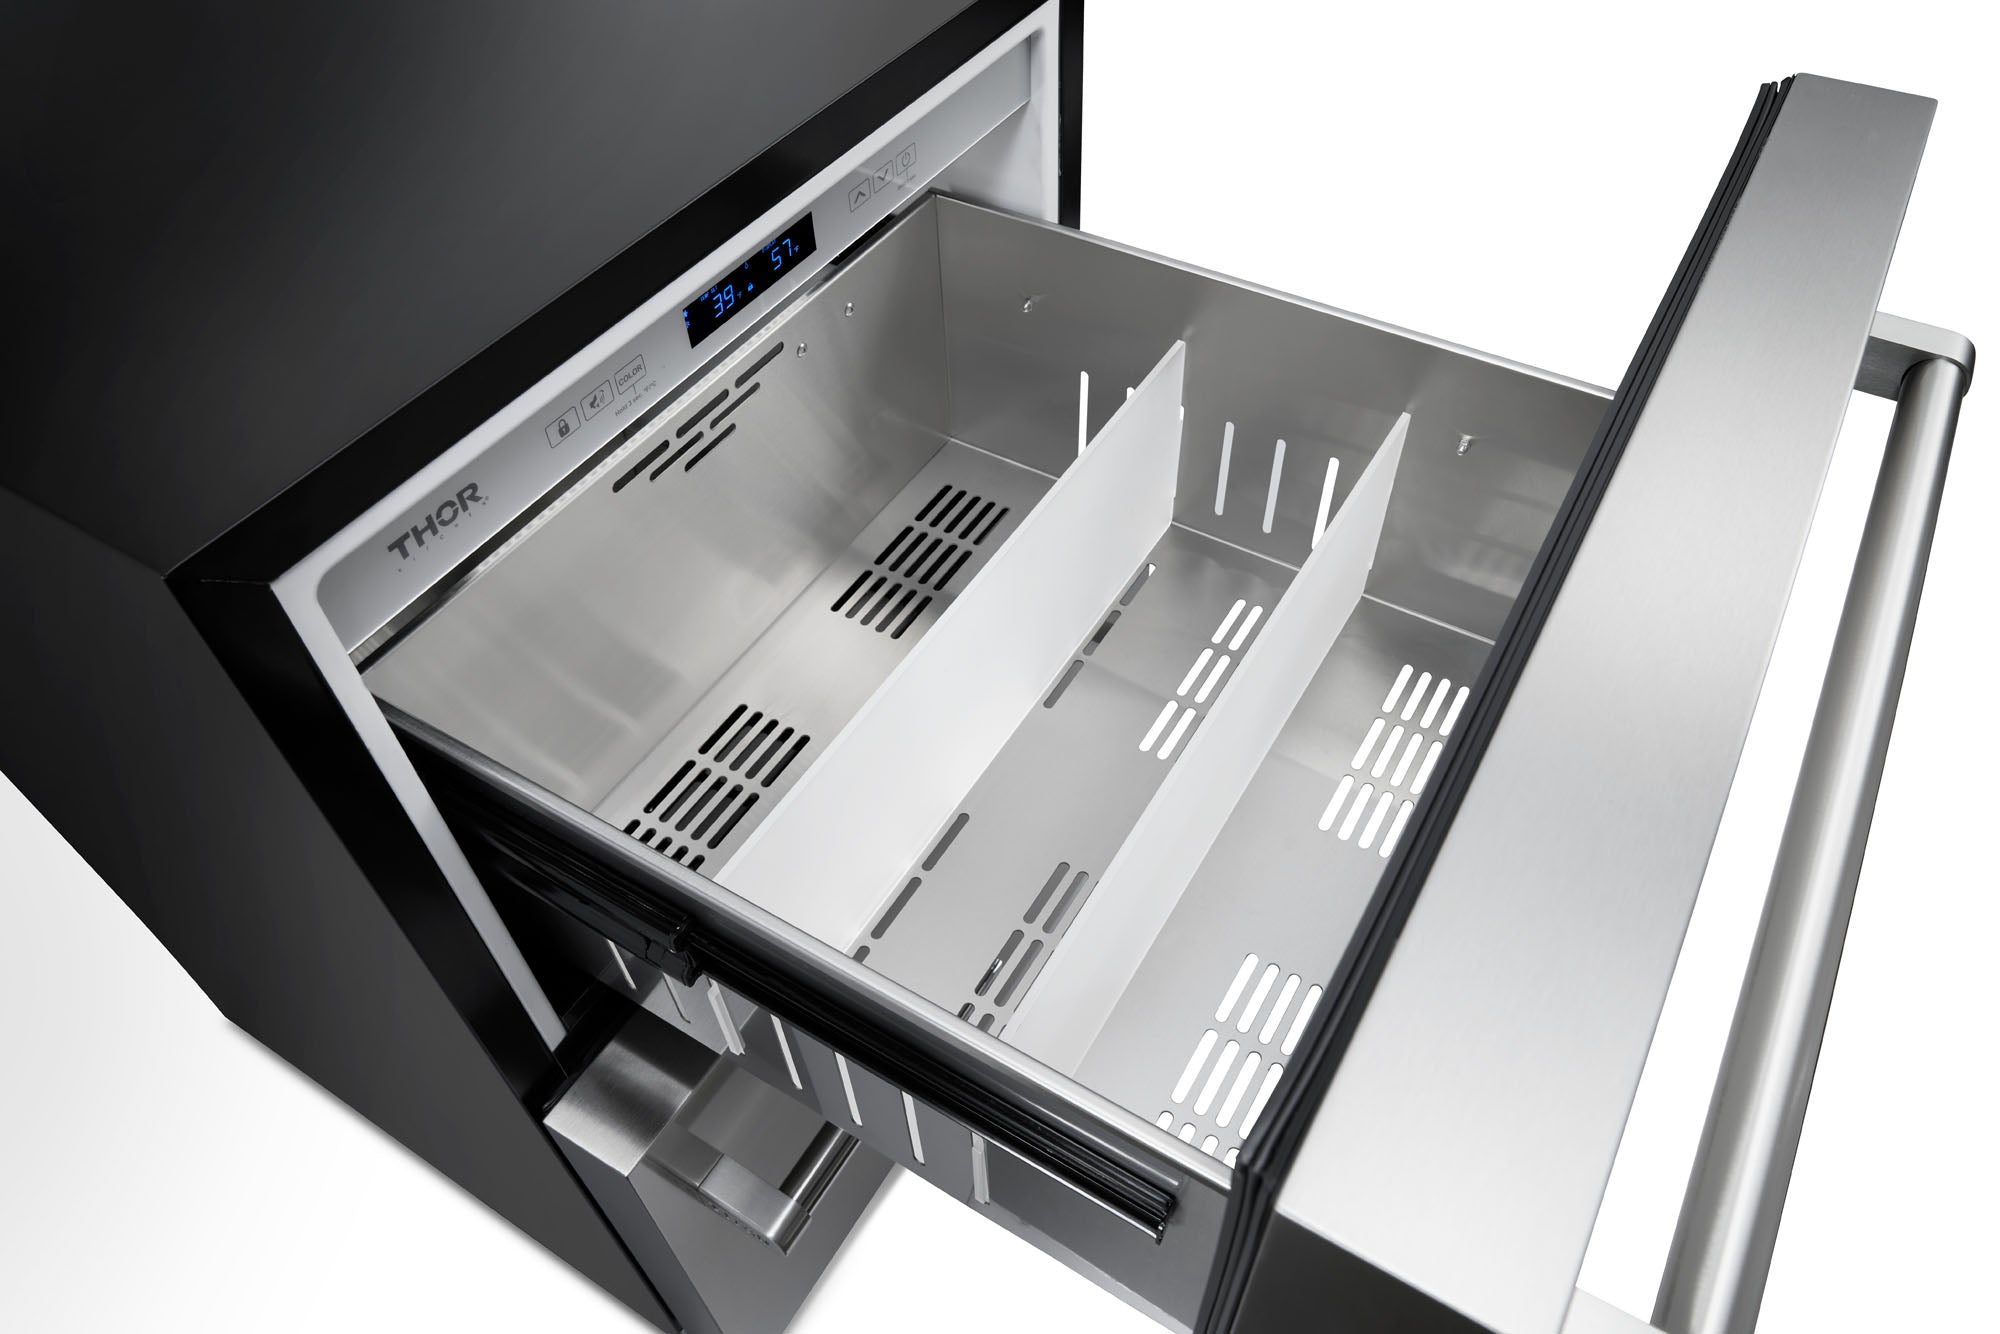 TRF24U (Renewed) Thor Kitchen 24 Inch Indoor Outdoor Refrigerator Drawer In stainless Steel